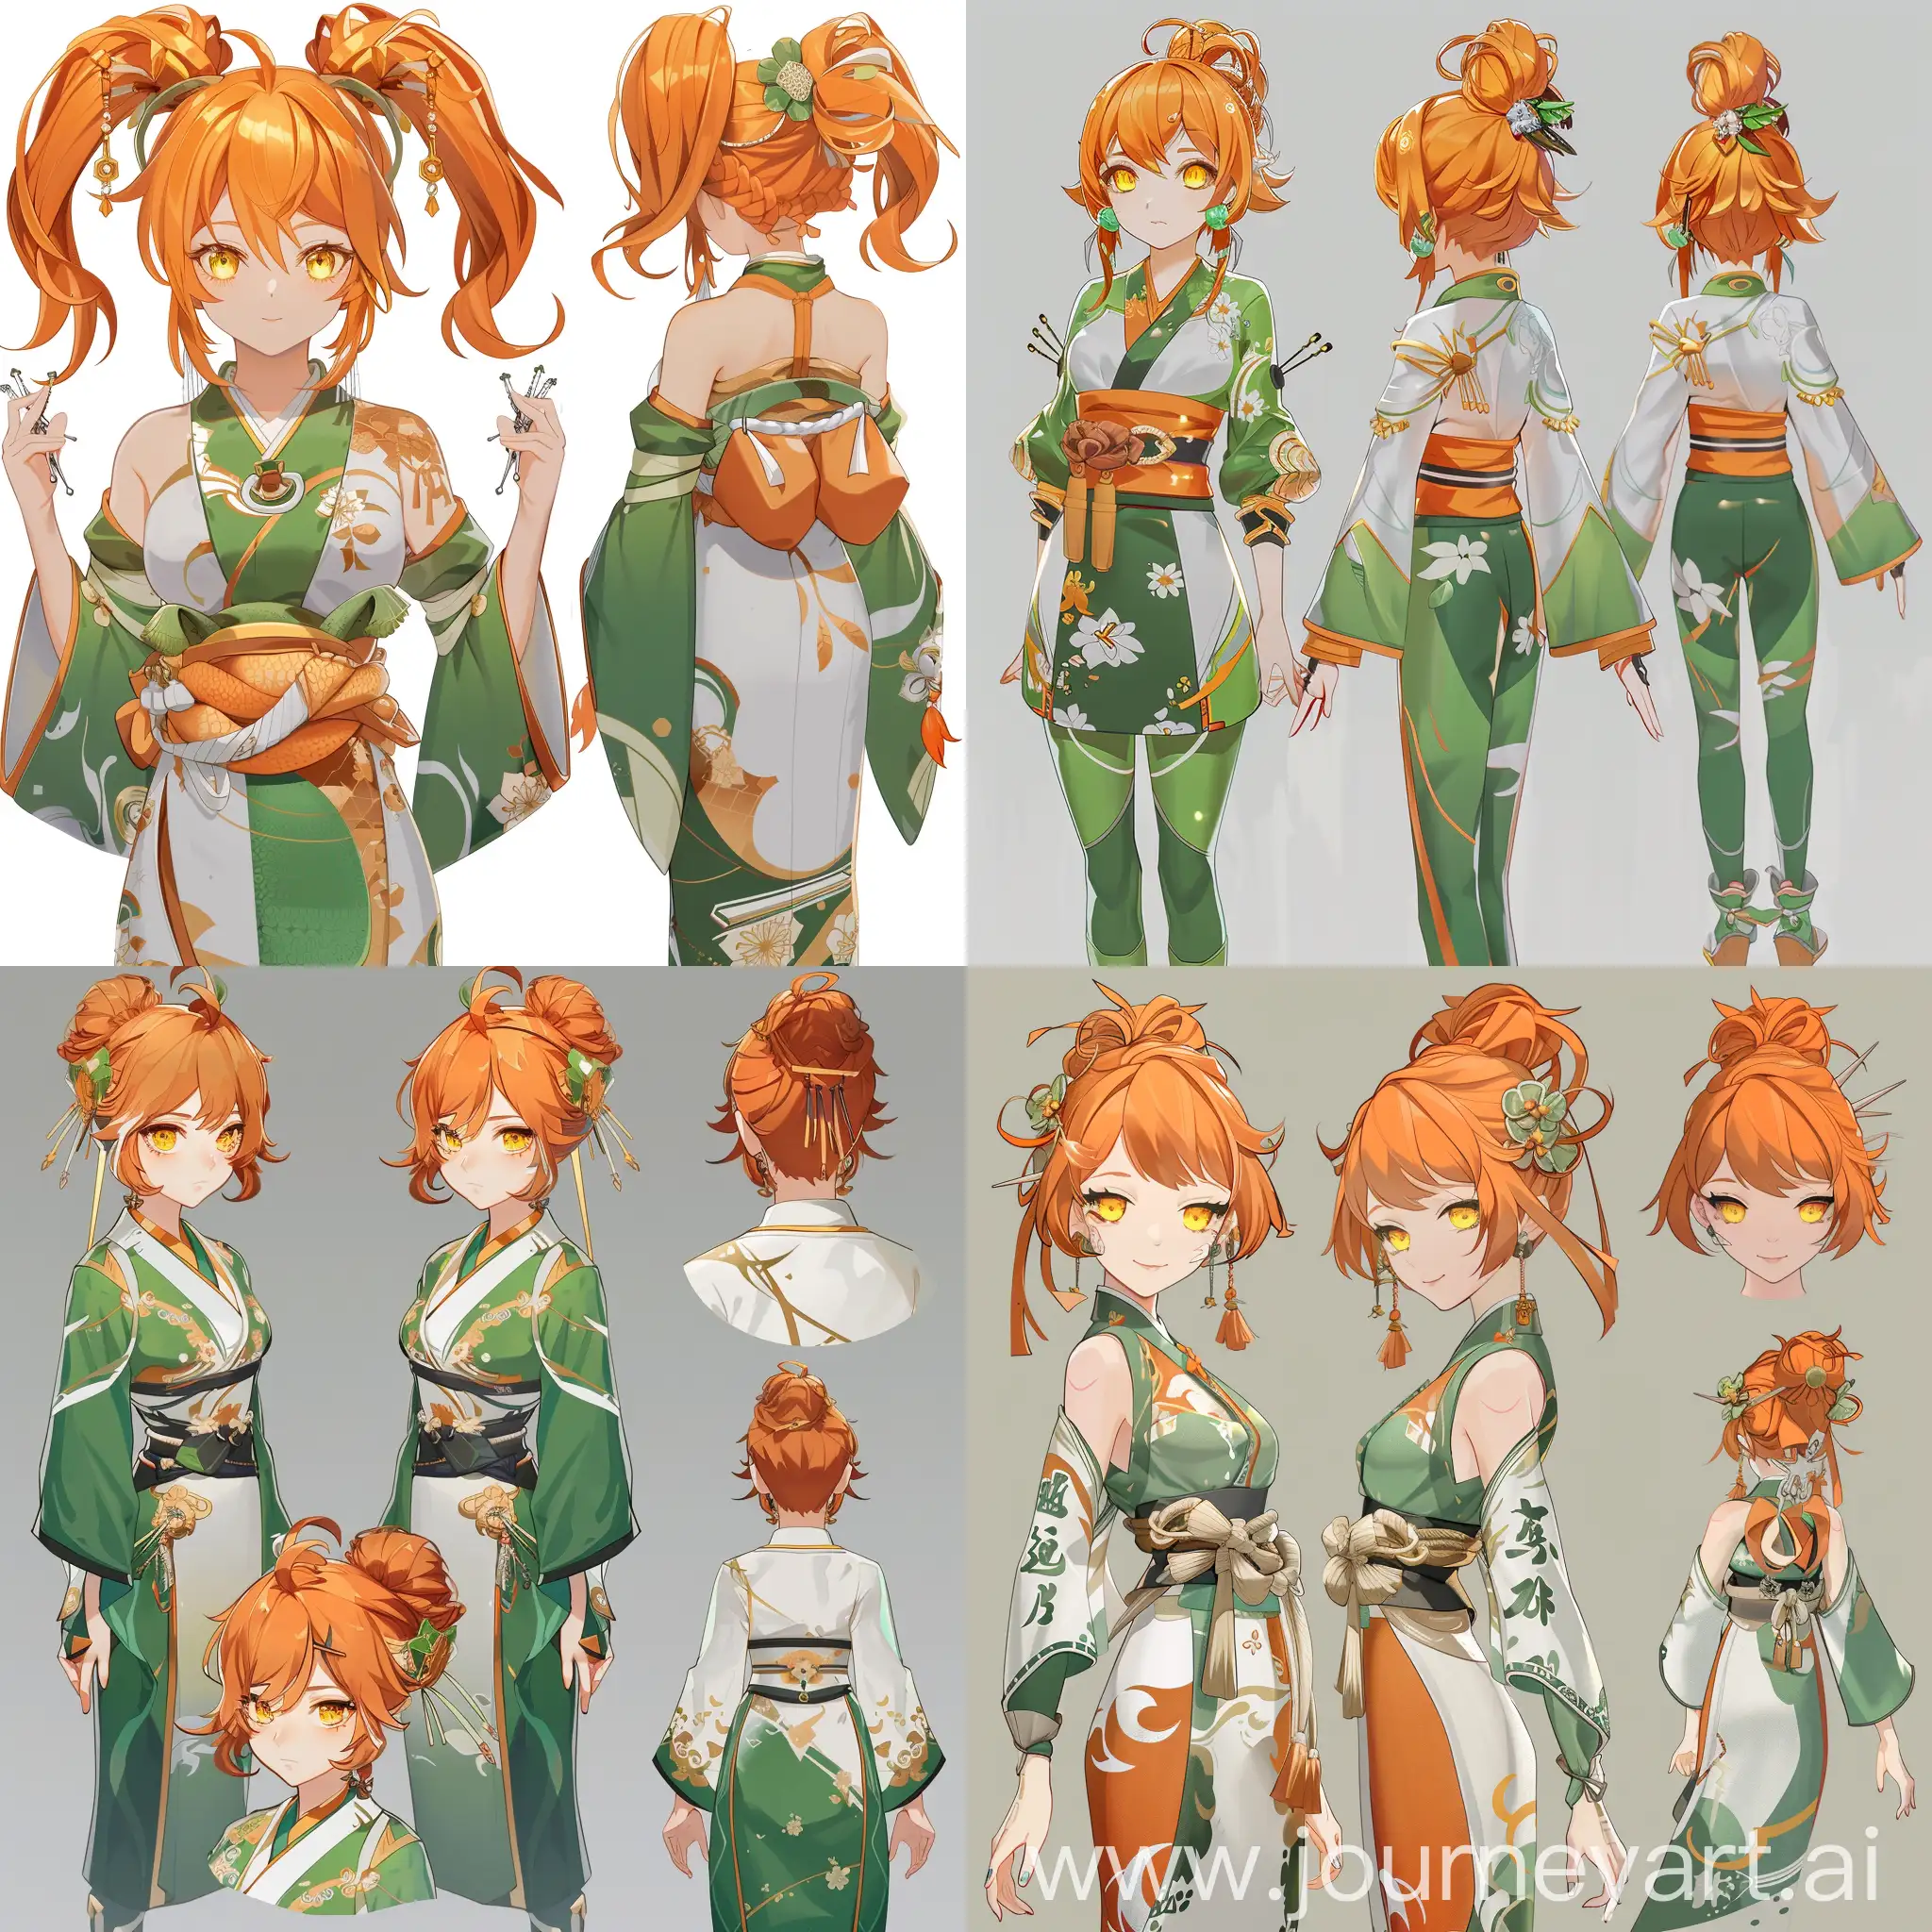 девушка из игры геншин импакт с оранжевыми волосами, в зелено-белой одежде и заколками в волосах, в кимоно с длинными рукавами, с разных ракурсов, с желтыми глазами 